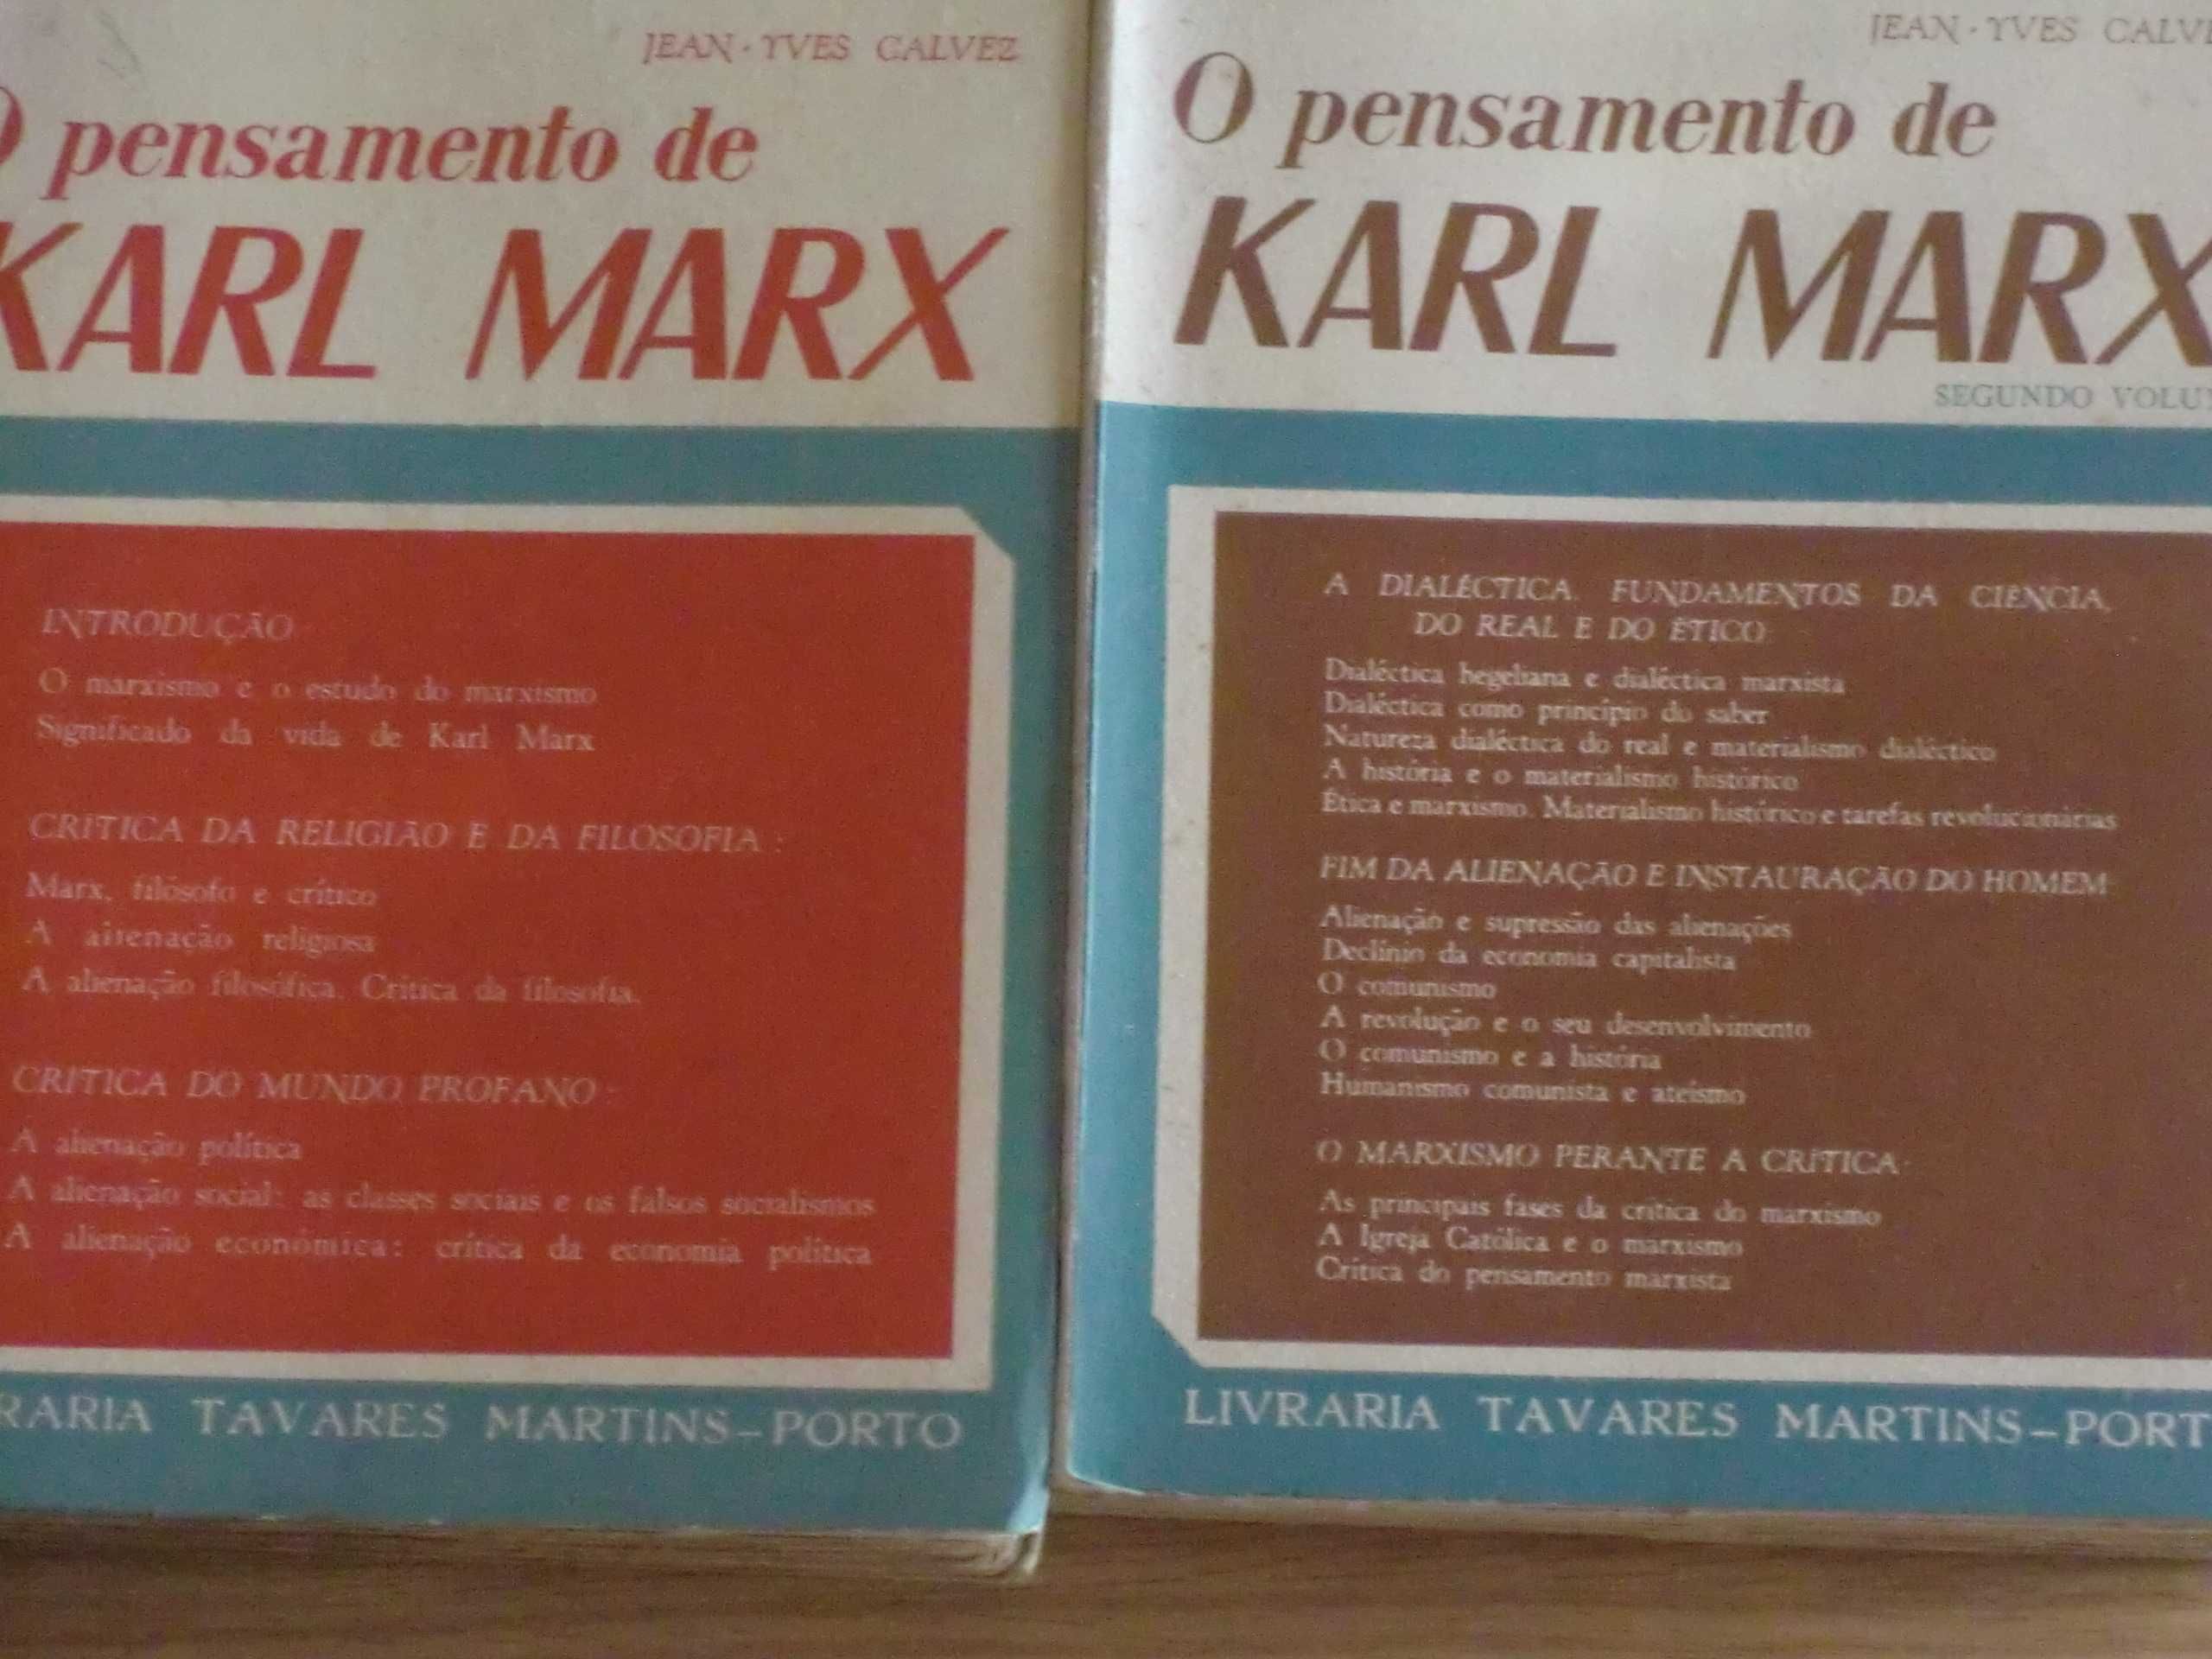 O Pensamento de Karl Marx
de Jean-Yves Calvez